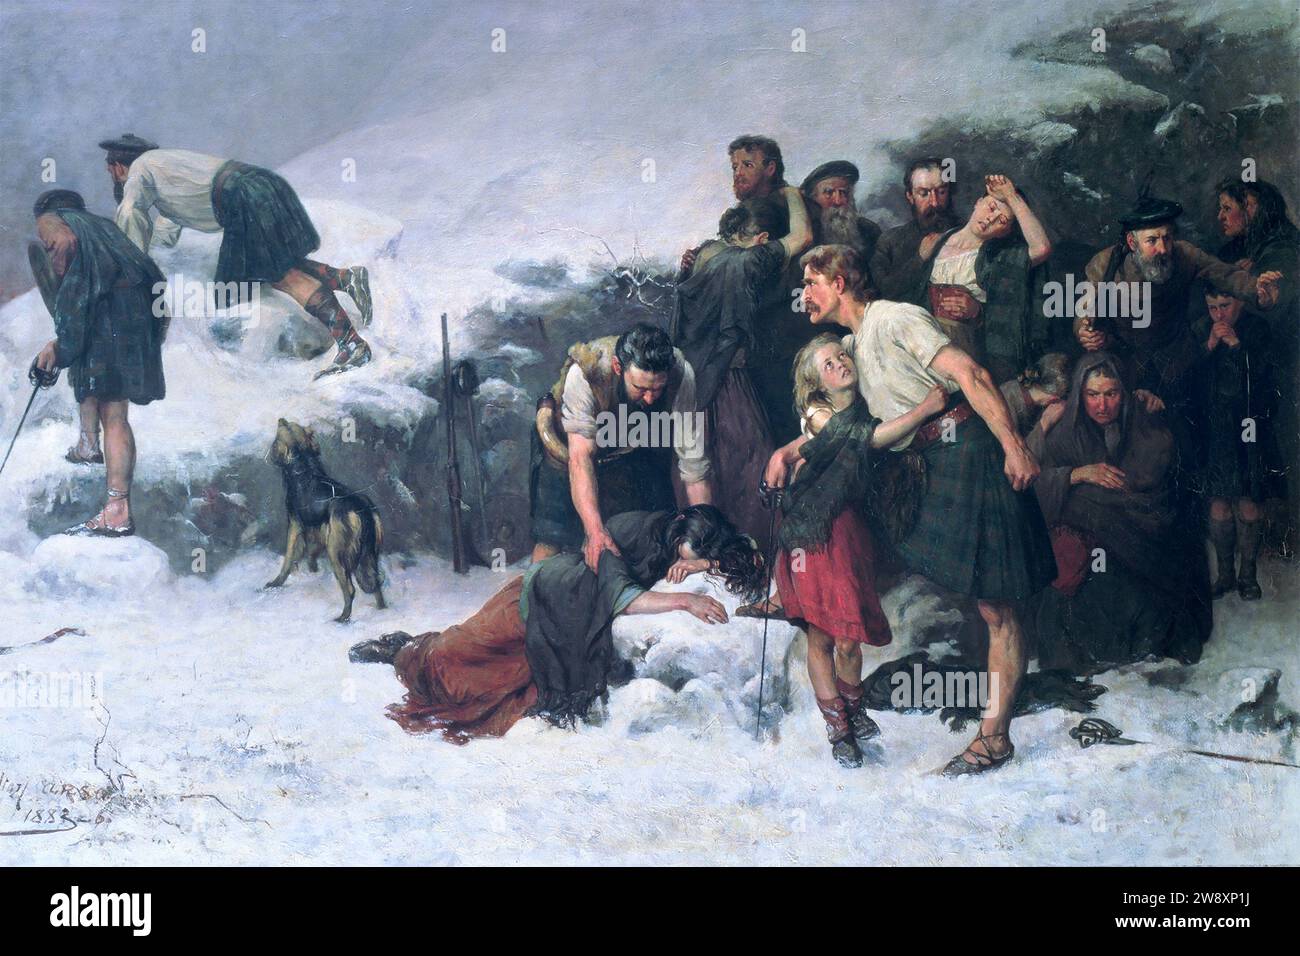 Le massacre de Glencoe par James Hamilton (1853-1894), huile sur toile, c. 1883-86 Banque D'Images